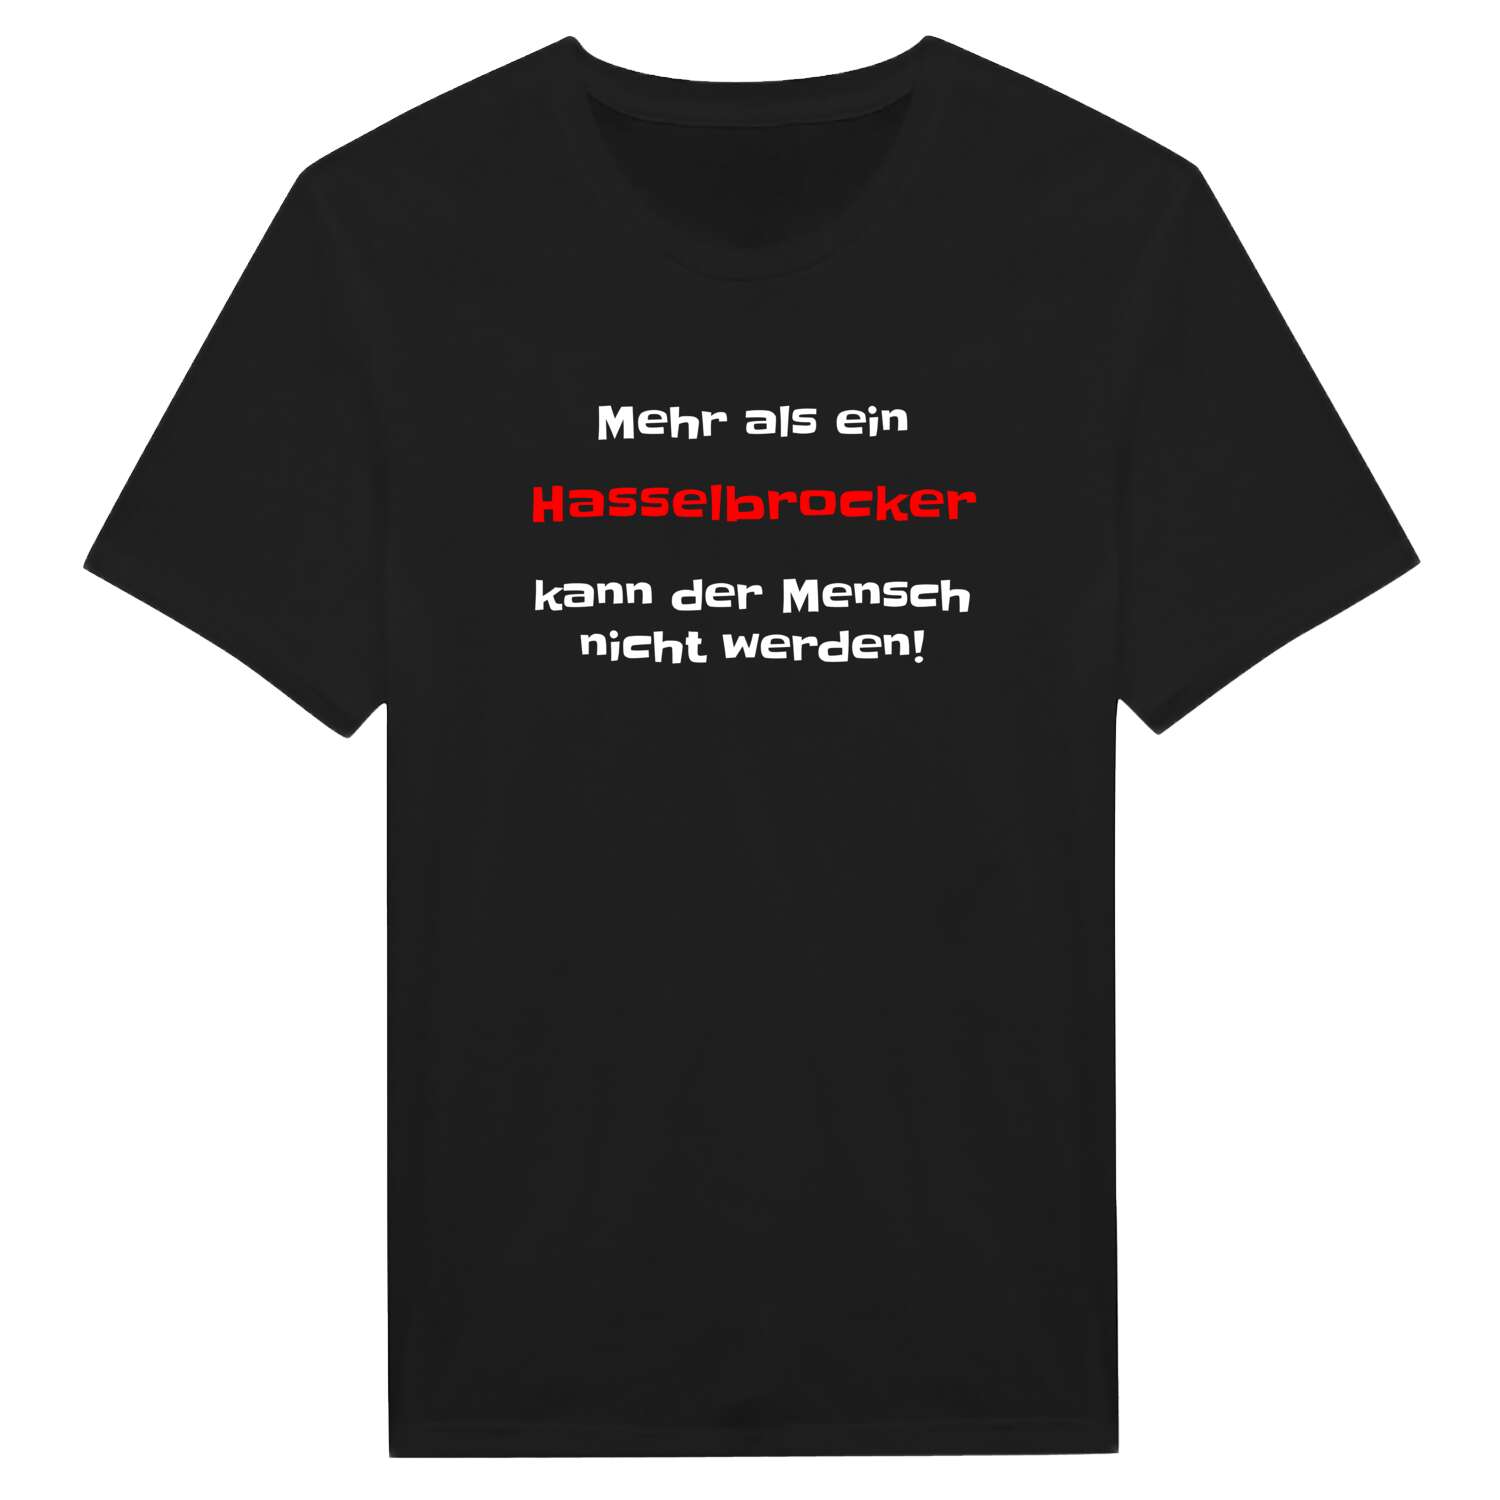 Hasselbrock T-Shirt »Mehr als ein«